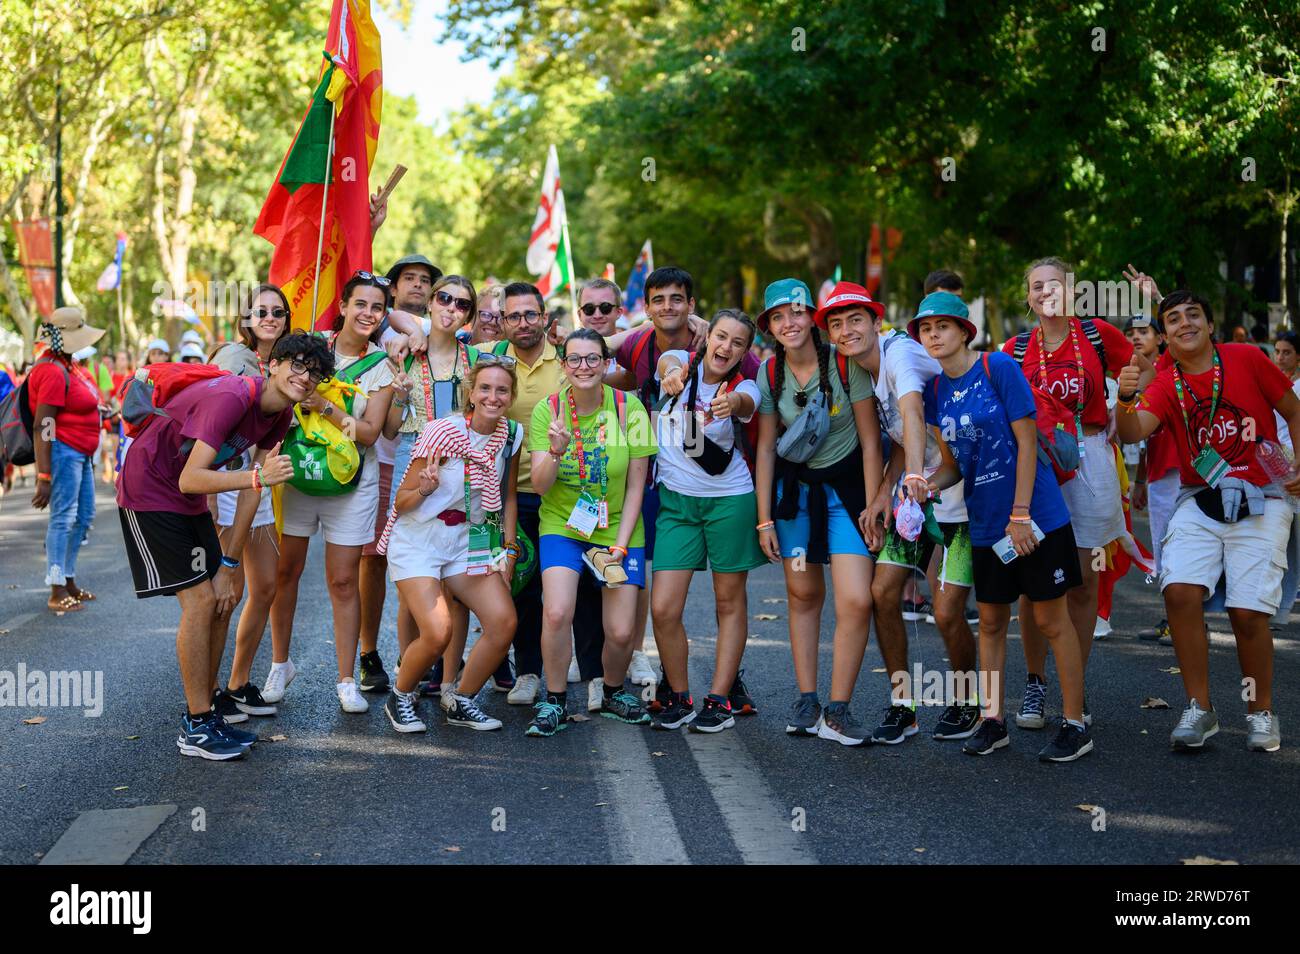 Peregrinos de varios países posando para una foto en su camino a la Santa Misa de apertura en el Parque Eduardo VII en Lisboa, Portugal. Foto de stock